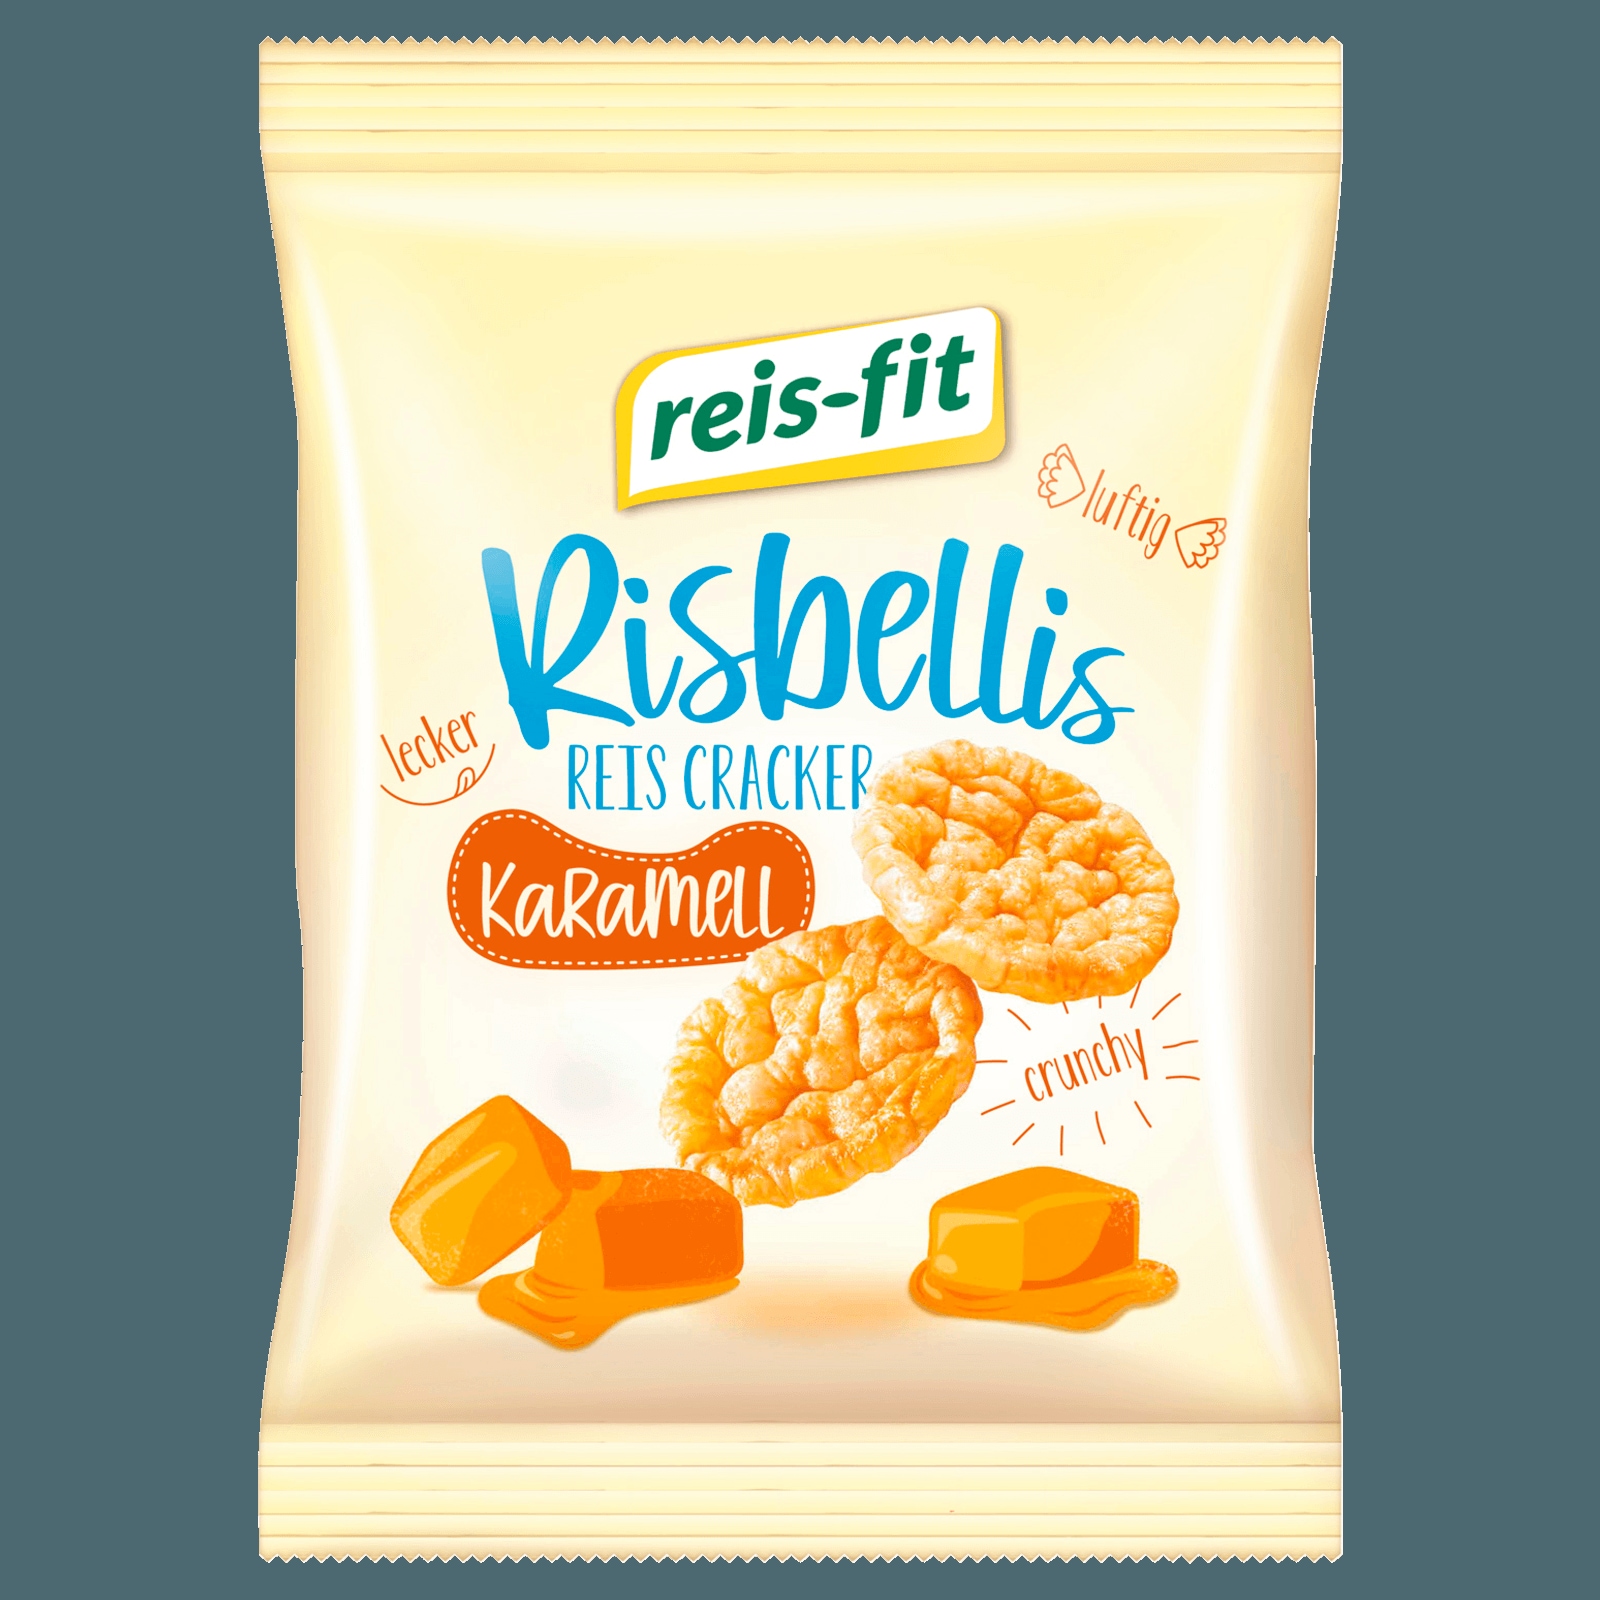 Reis-fit Risbellis Karamell 40g bei REWE online bestellen!